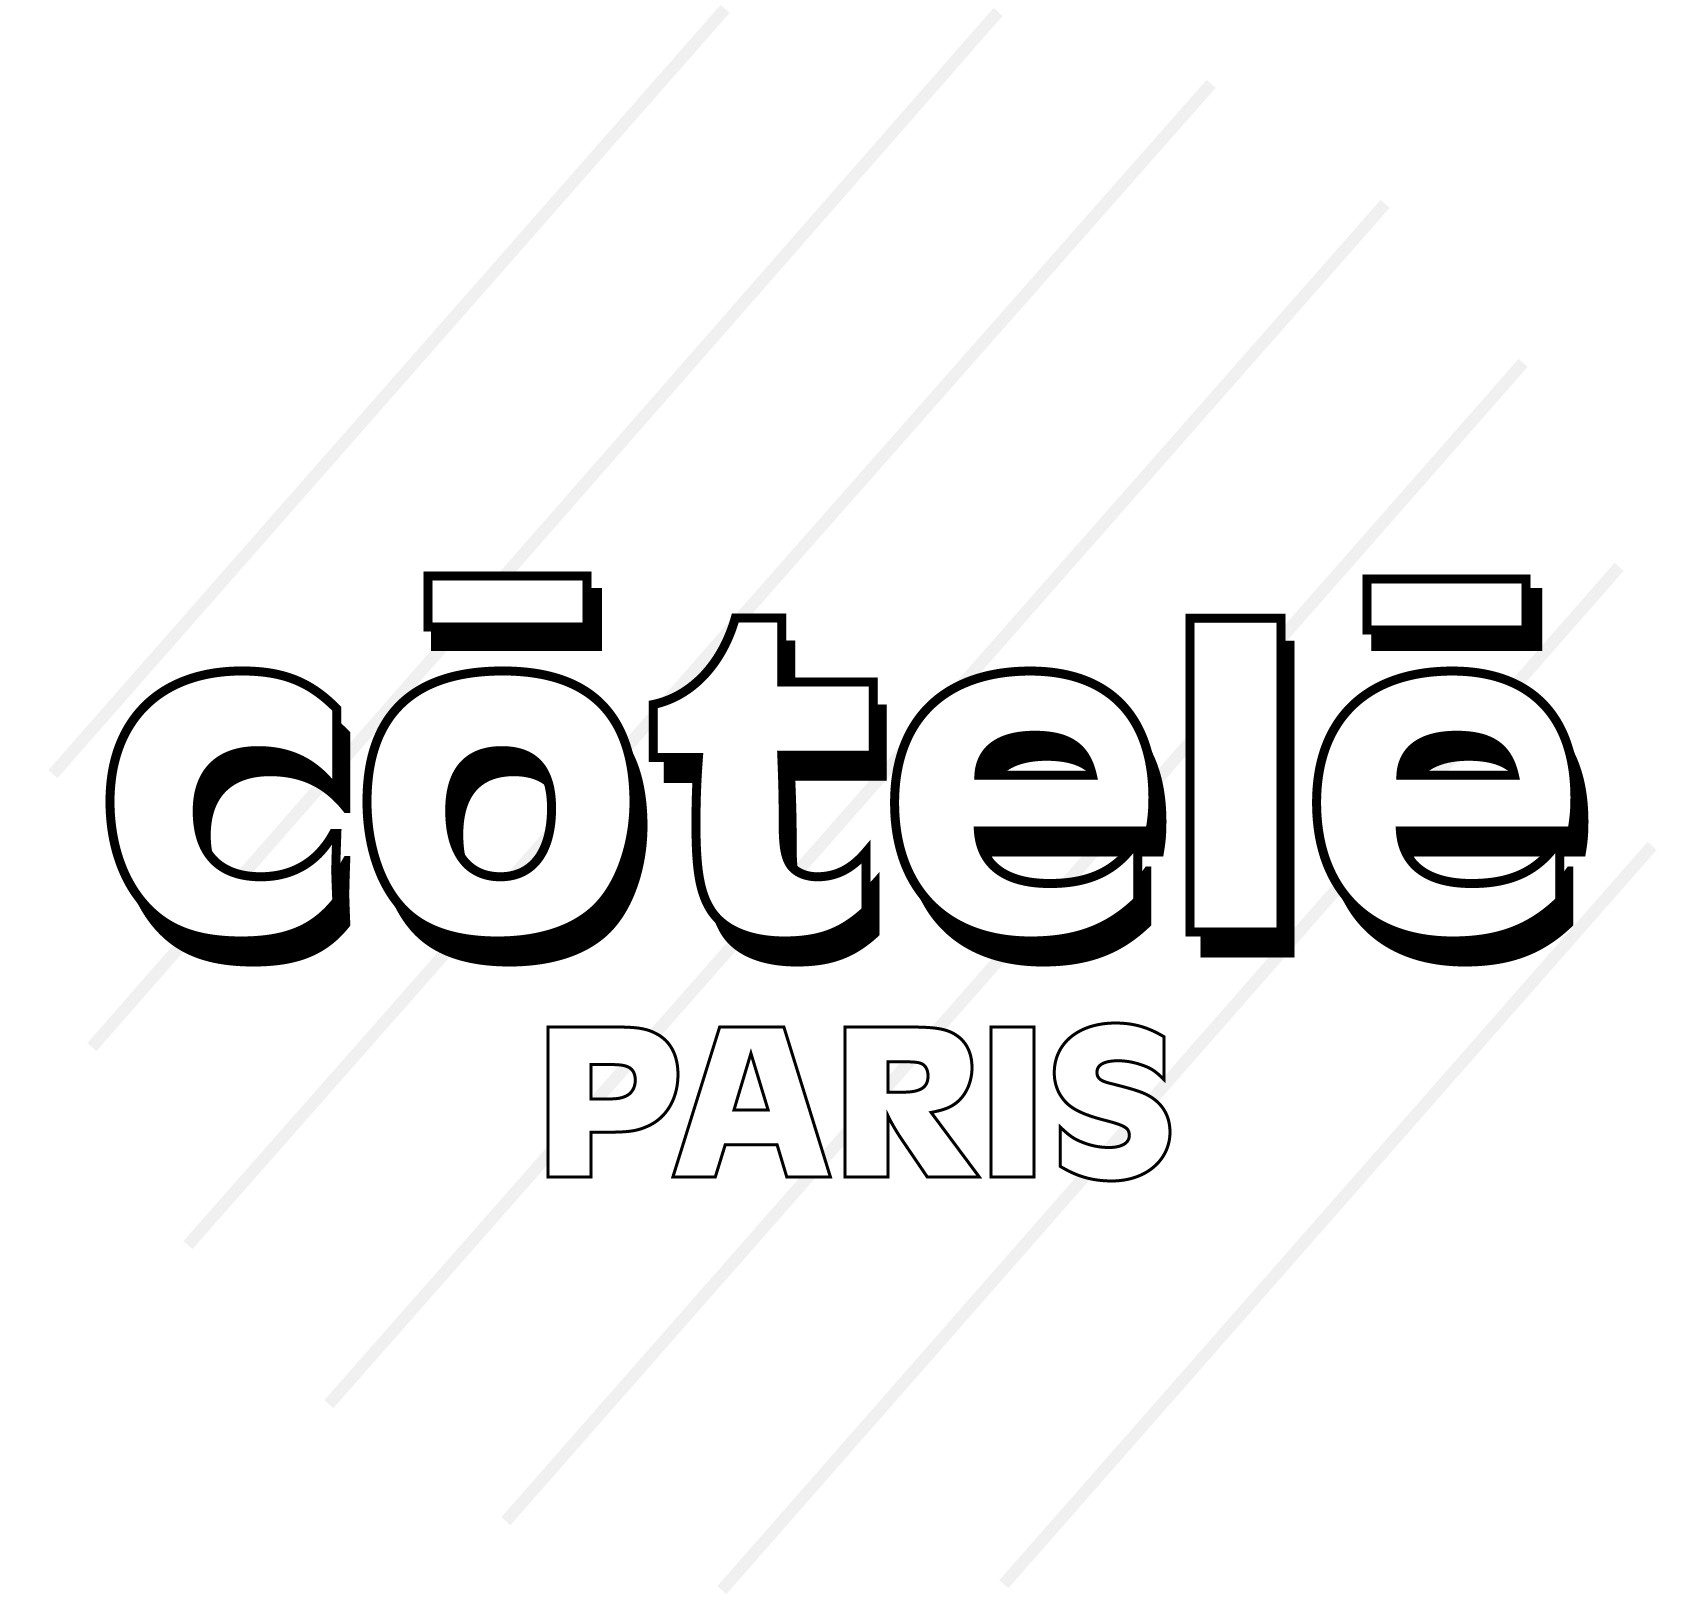 Côtelé Paris